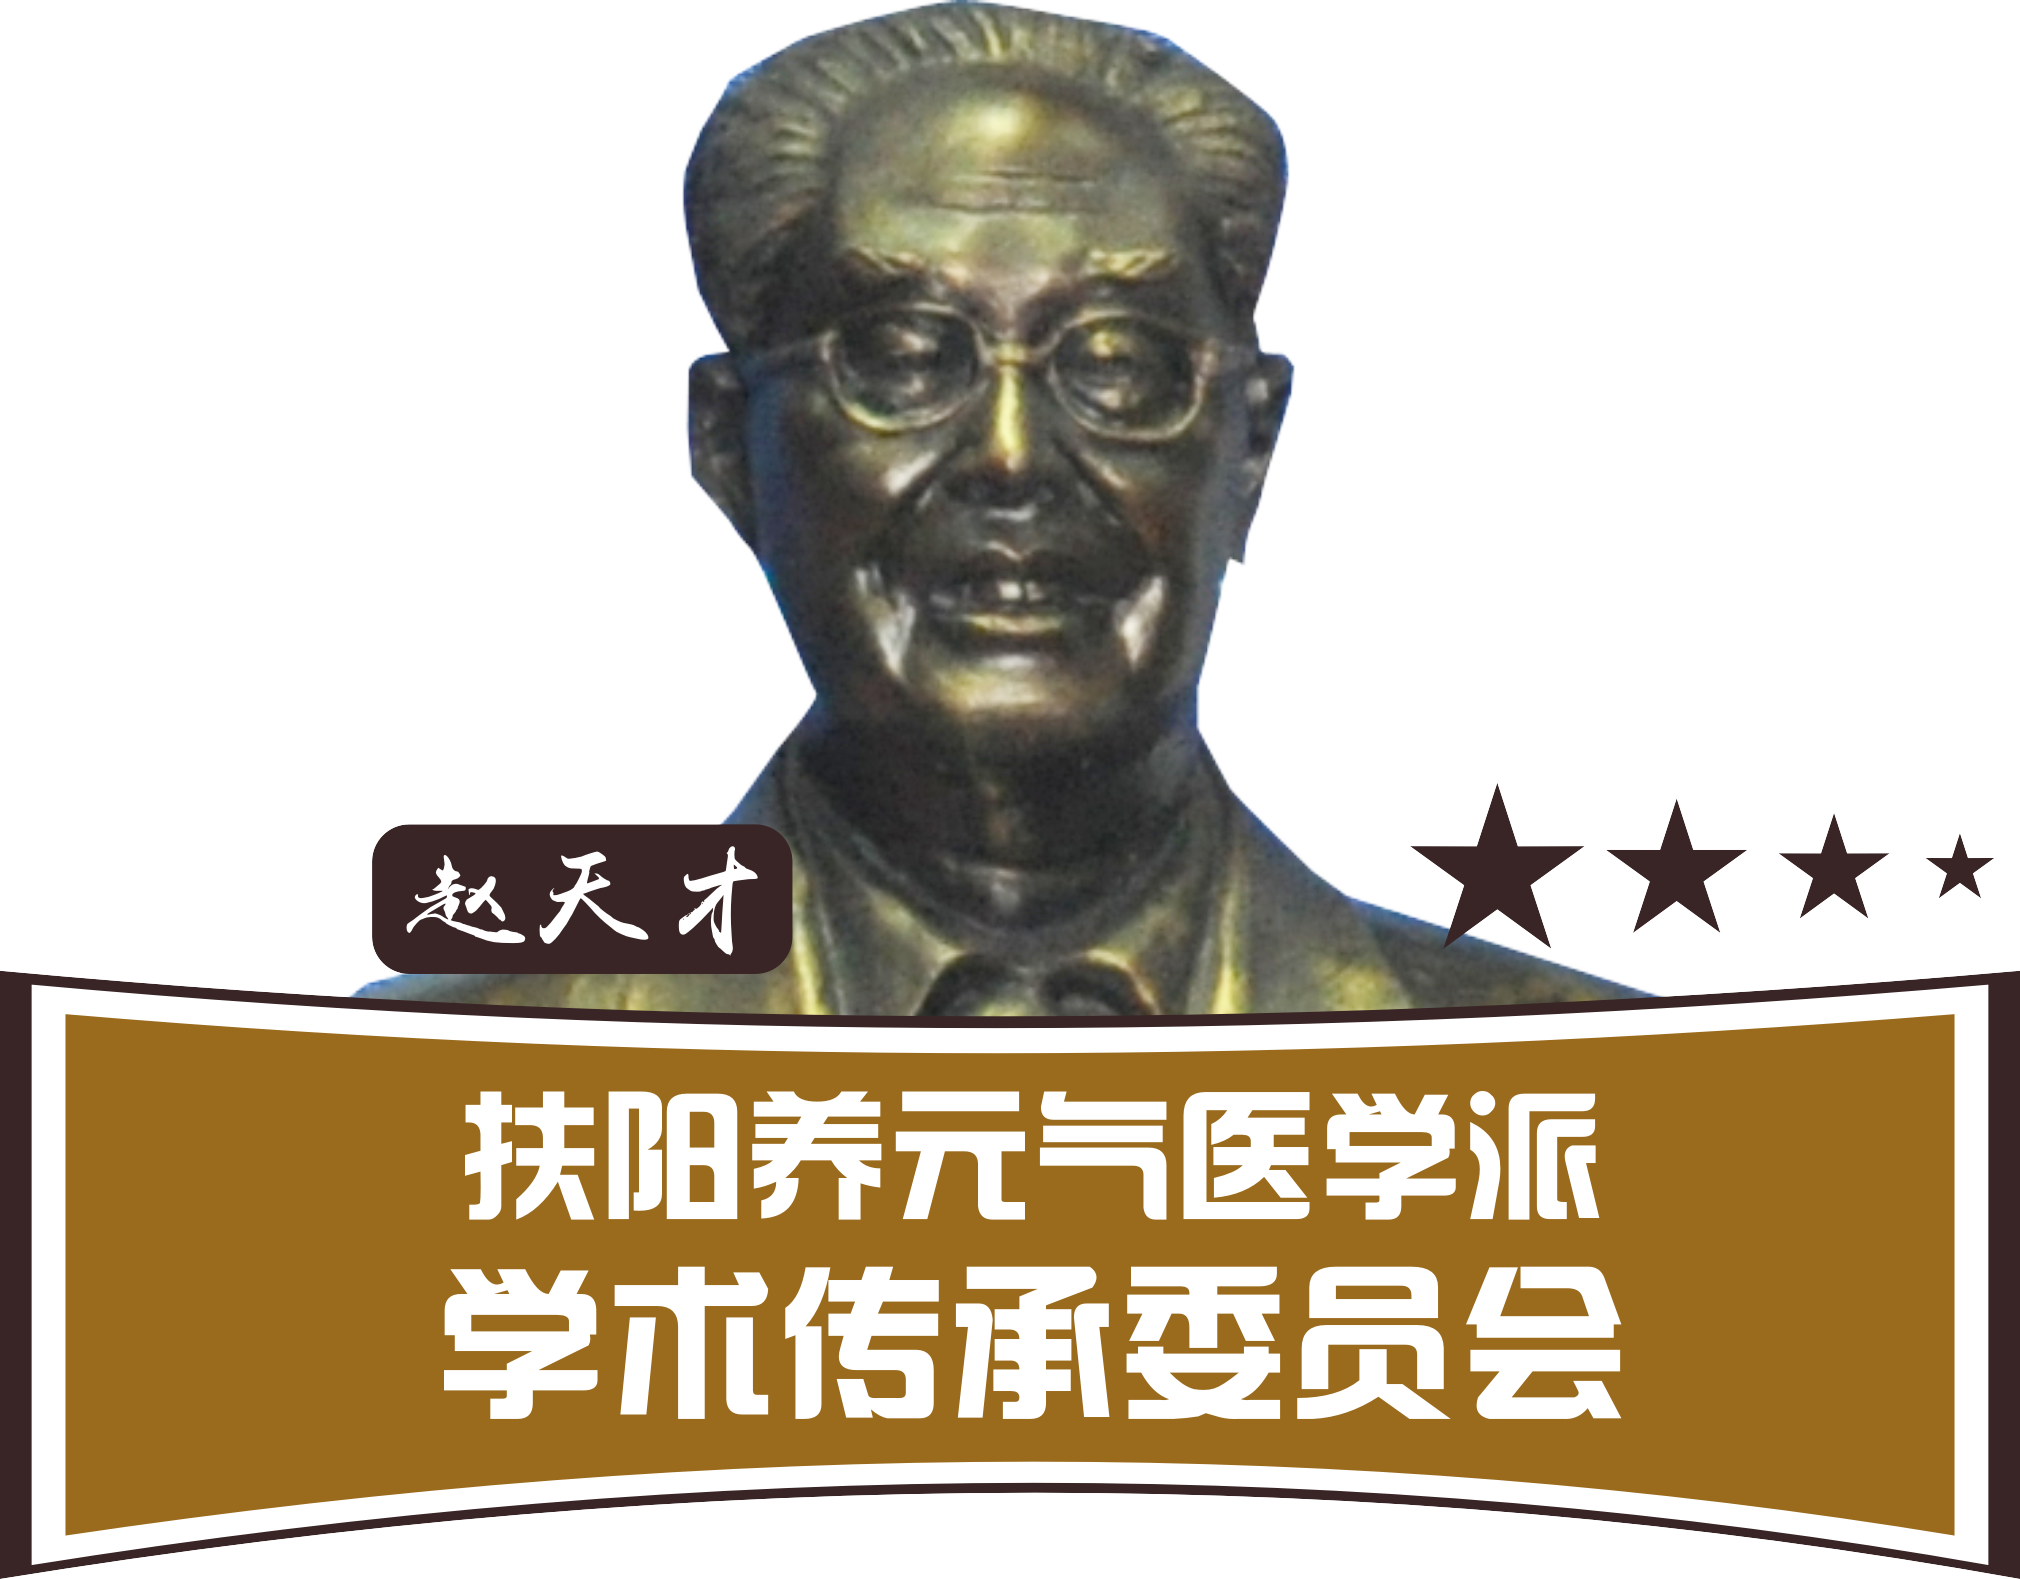 赵天才"扶阳养元气医学派学术传承委员会"是以中华名医赵天才"扶阳